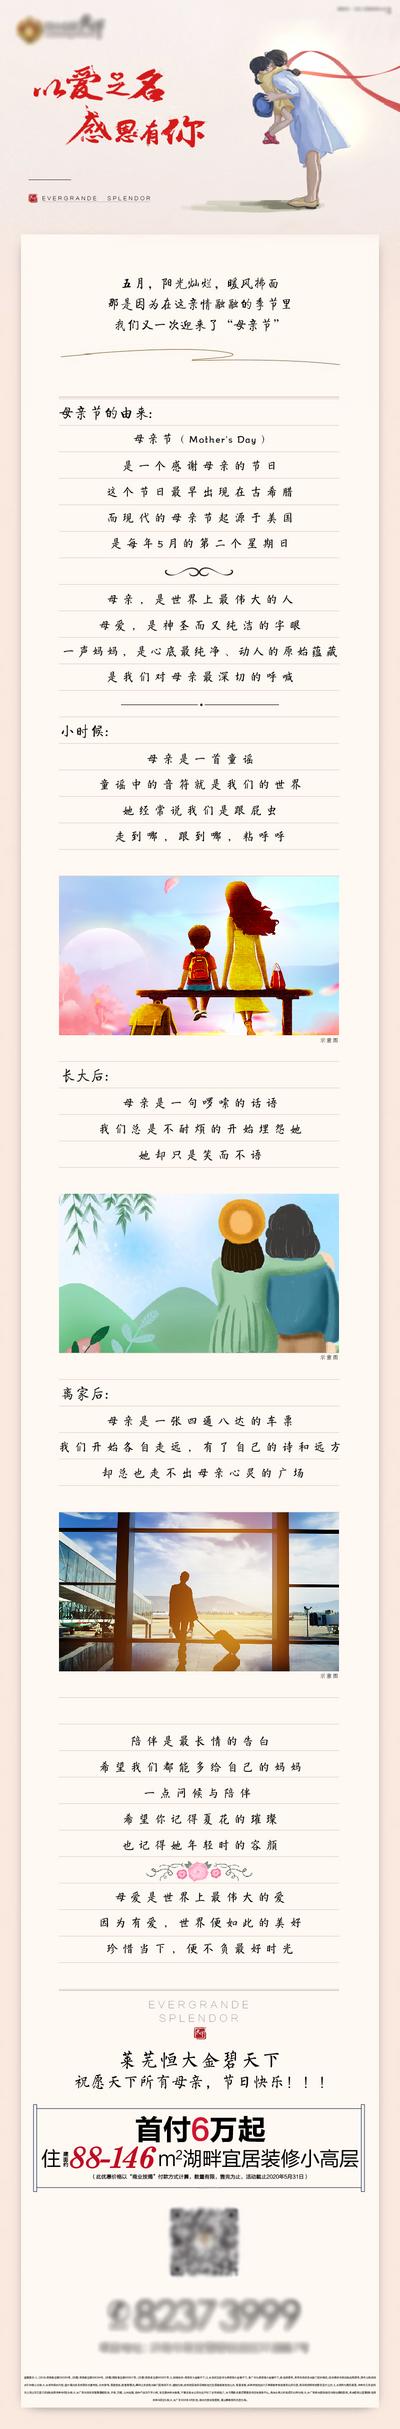 南门网 专题设计 长图 房地产 公历节日 母亲节 感恩 温馨 插画